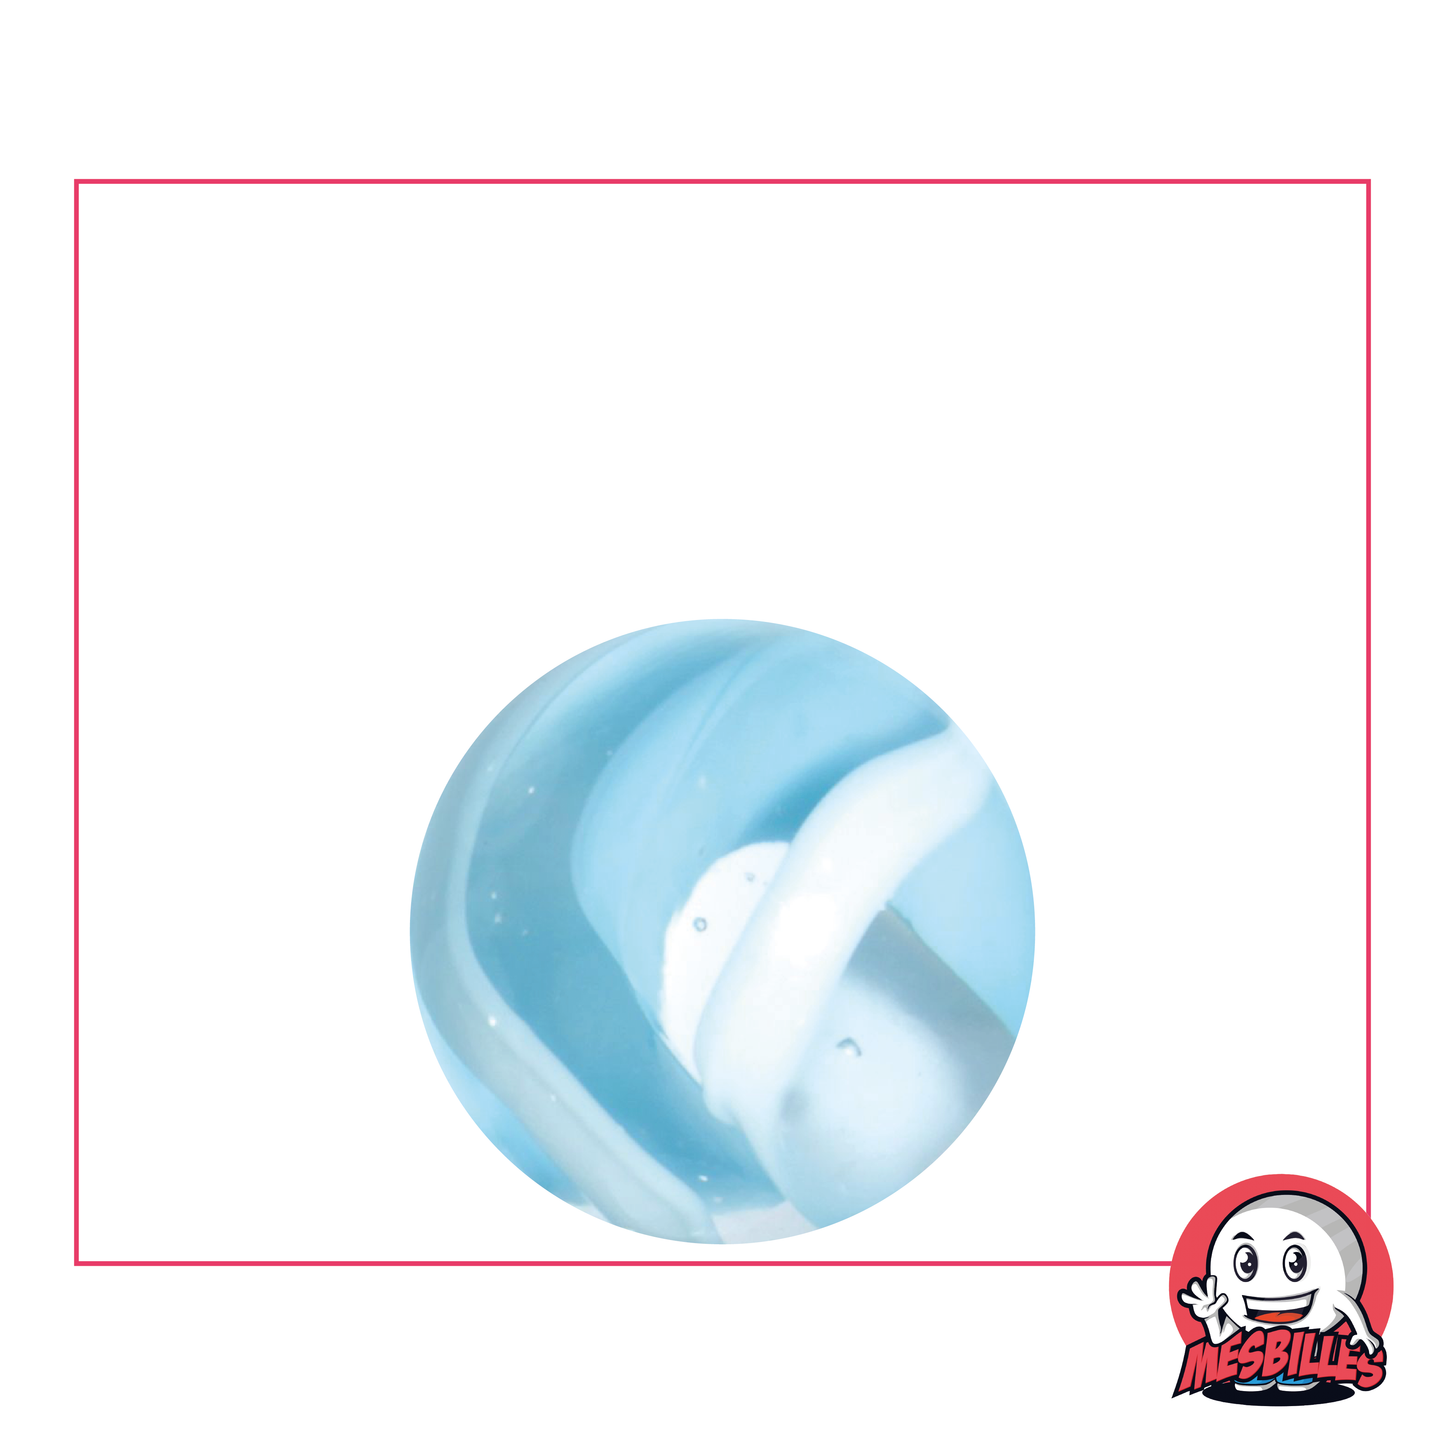 Bille Neige, bille mini-calot en verre translucide partiellement recouverte de blanc et bleu clair